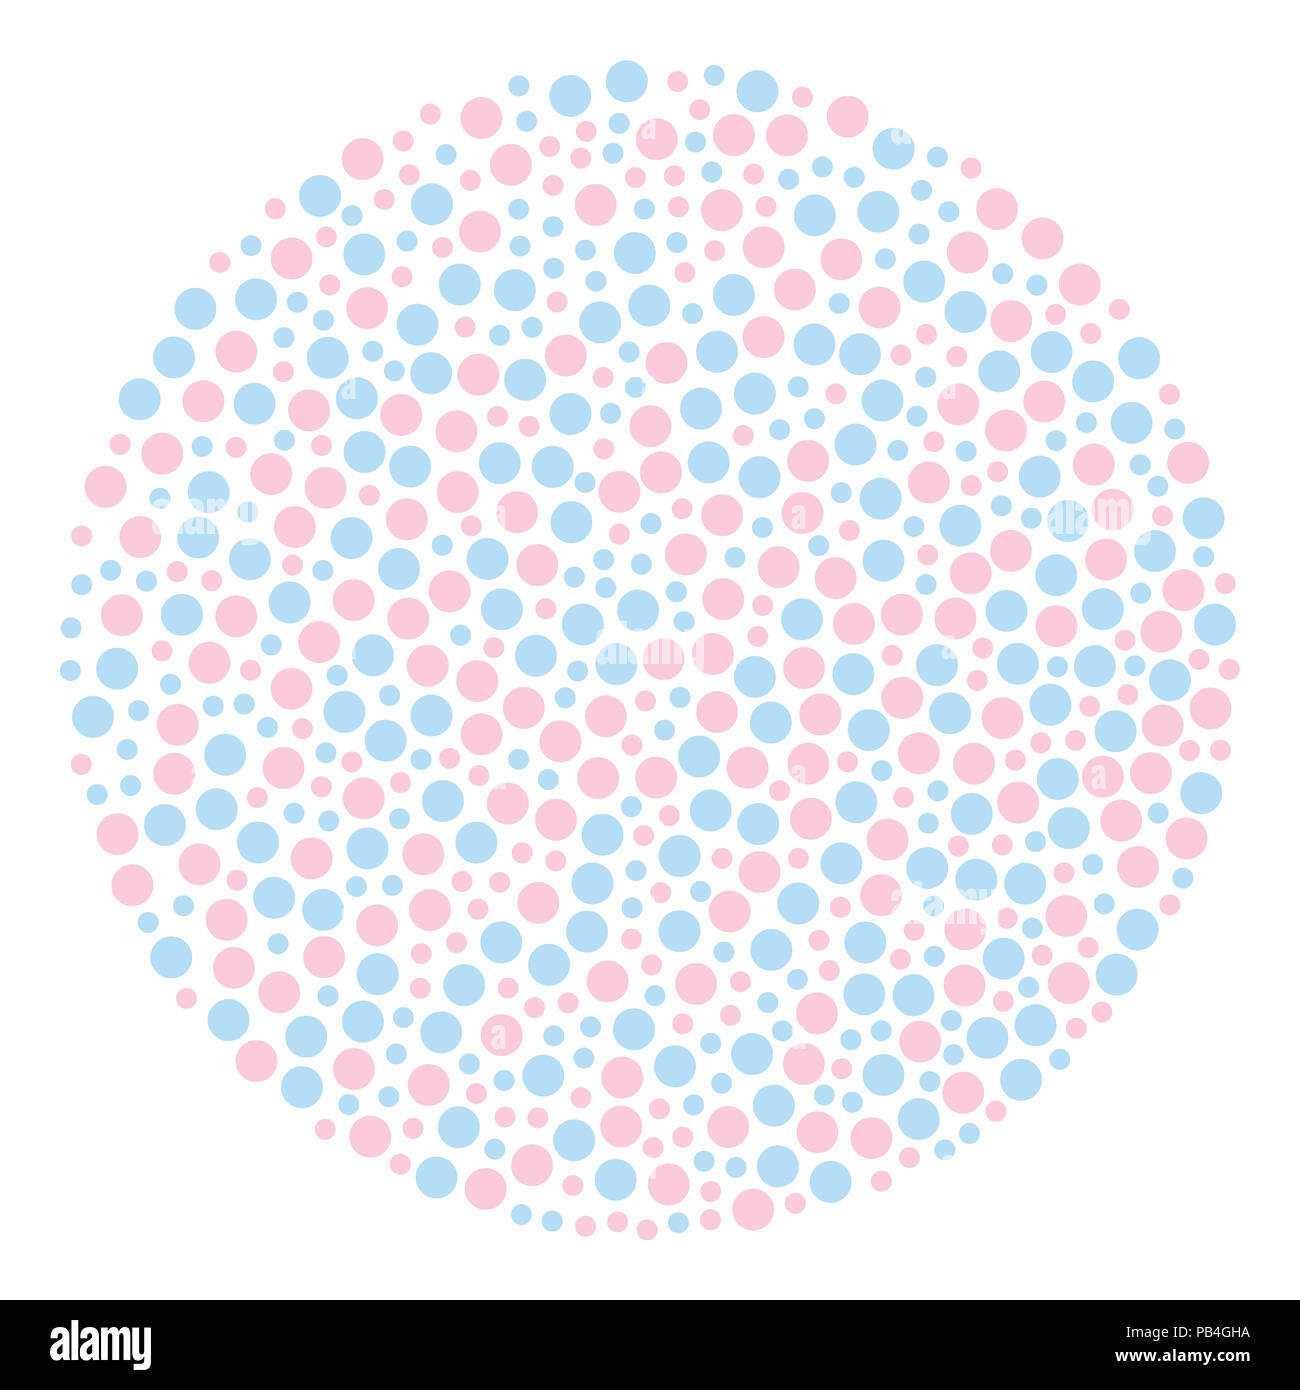 Kreis förmige Hintergrund aus Punkten, farbig in Hellblau und Rosa. Kreisförmiges Gebiet, aus zufällig farbigen kleinen Flecken. Beschmutzt. Stockfoto